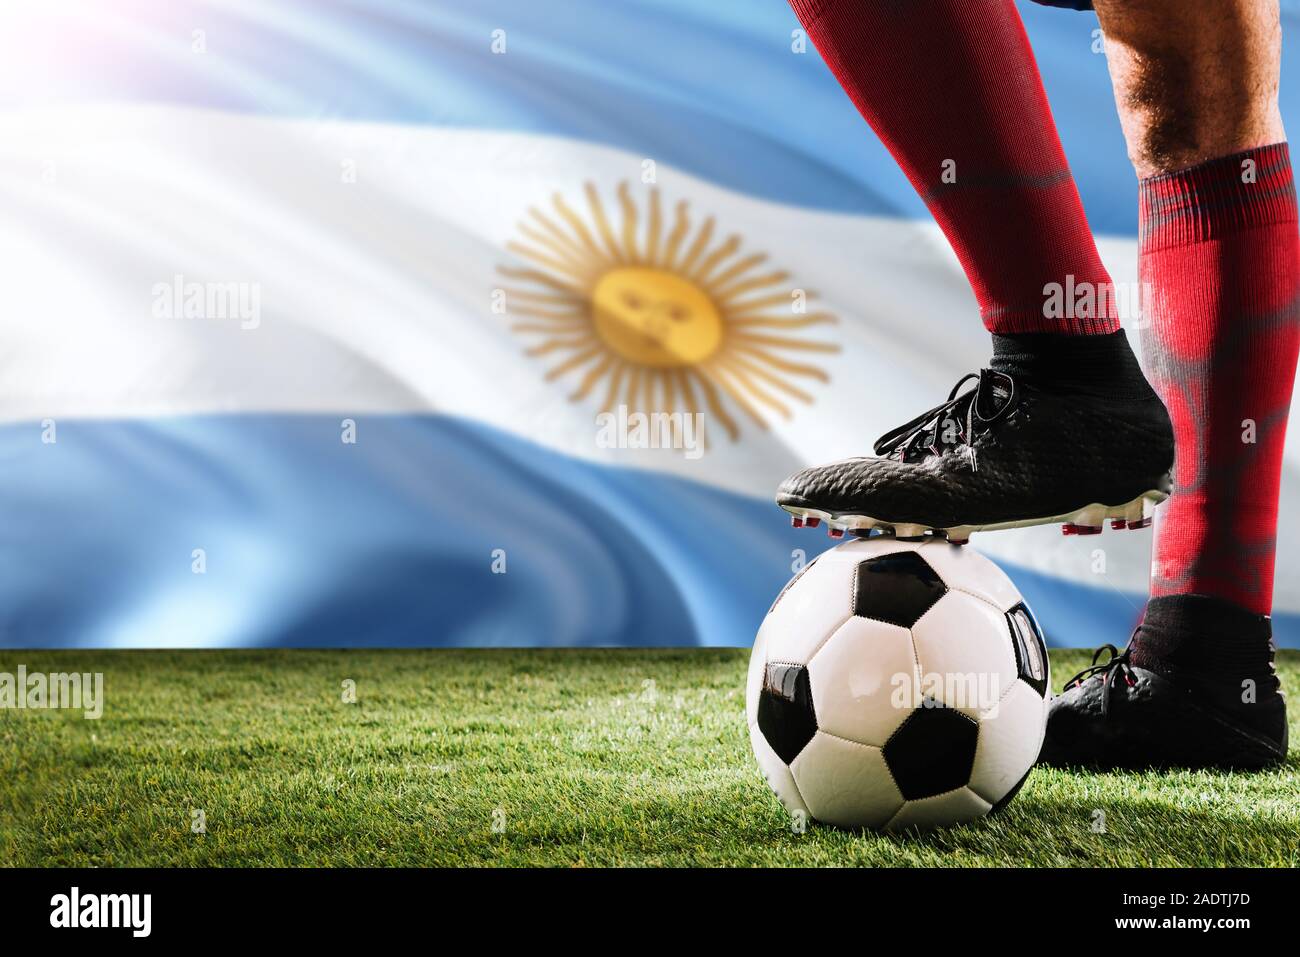 Nahaufnahme Beine von Argentinien Fußball Team Player in roten Socken,  Schuhe auf Fußball im Free Kick oder elfmeterpunkt Spielen auf Gras  Stockfotografie - Alamy